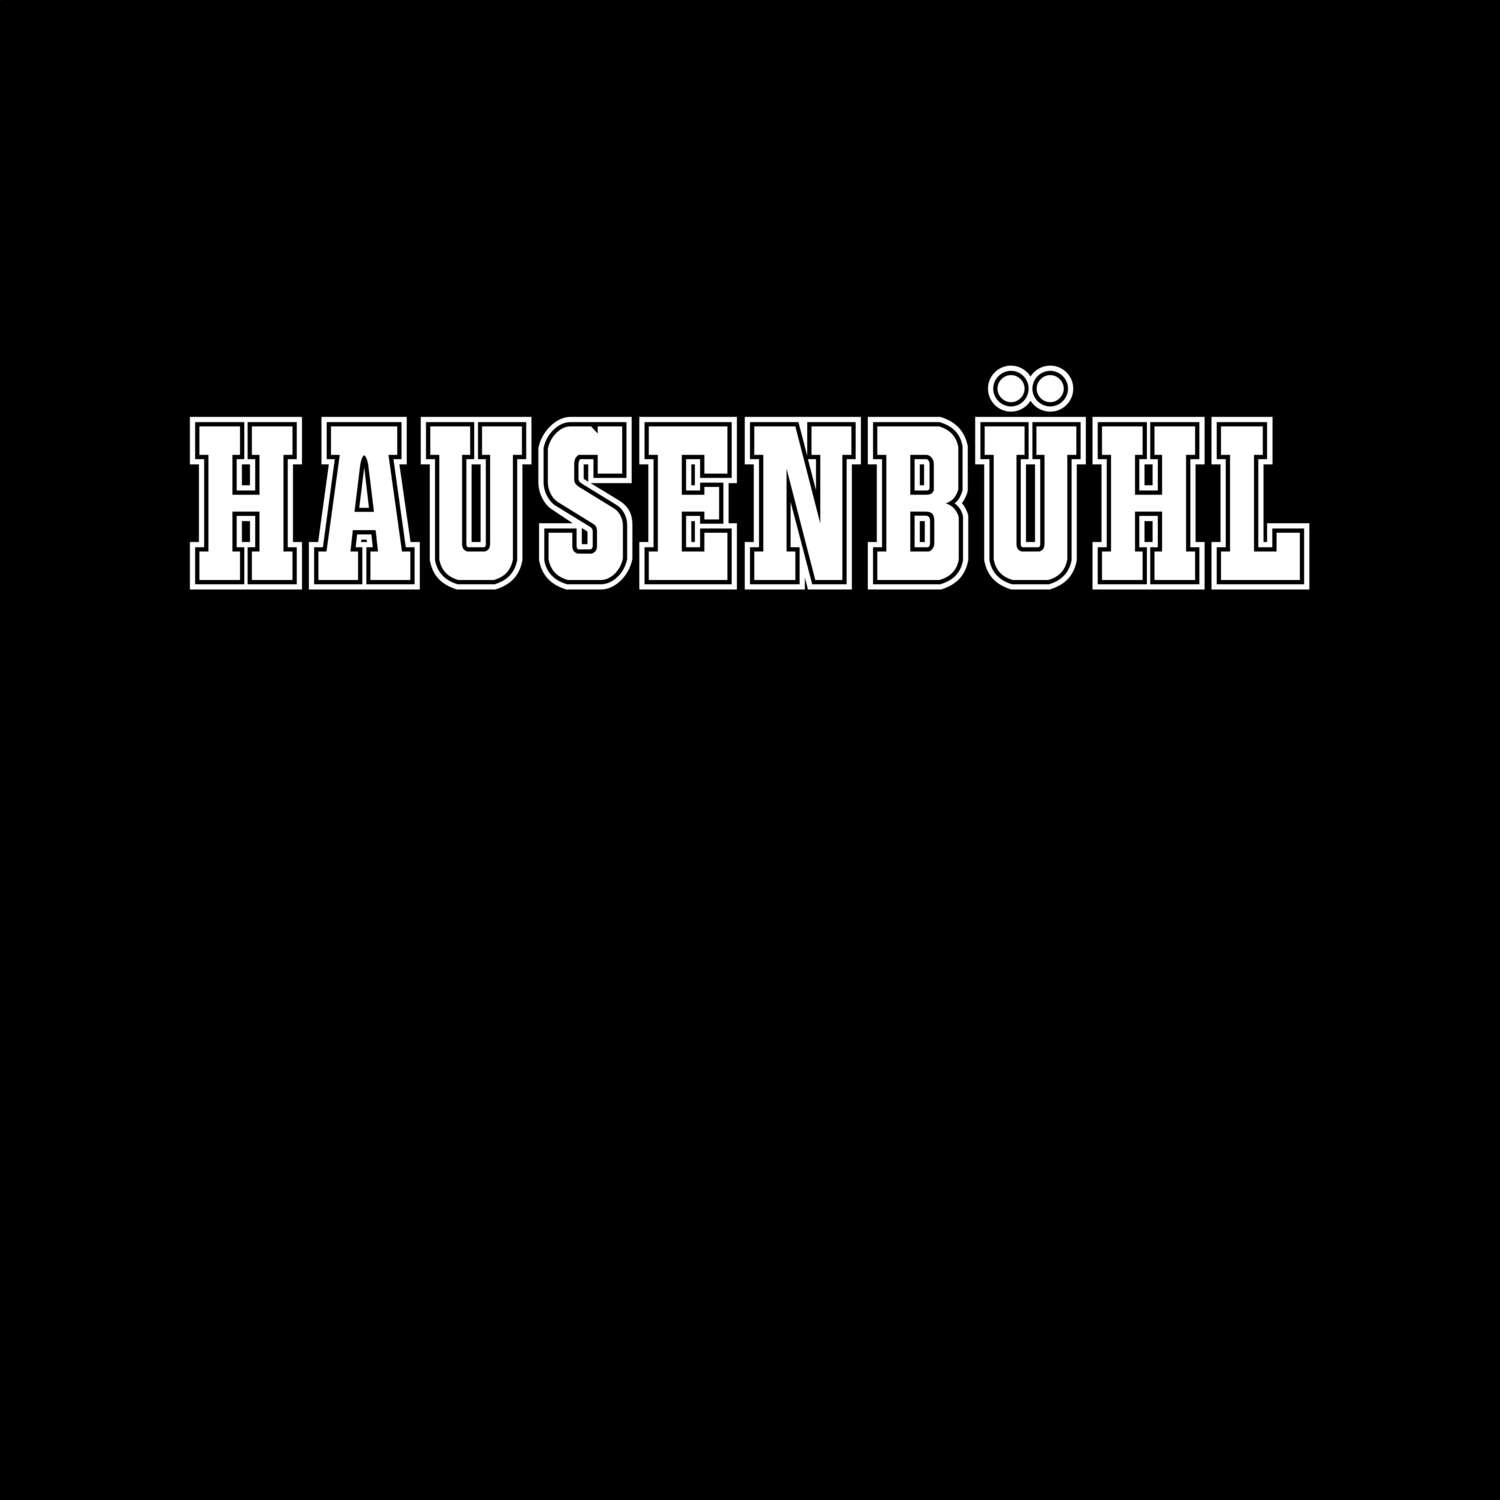 Hausenbühl T-Shirt »Classic«